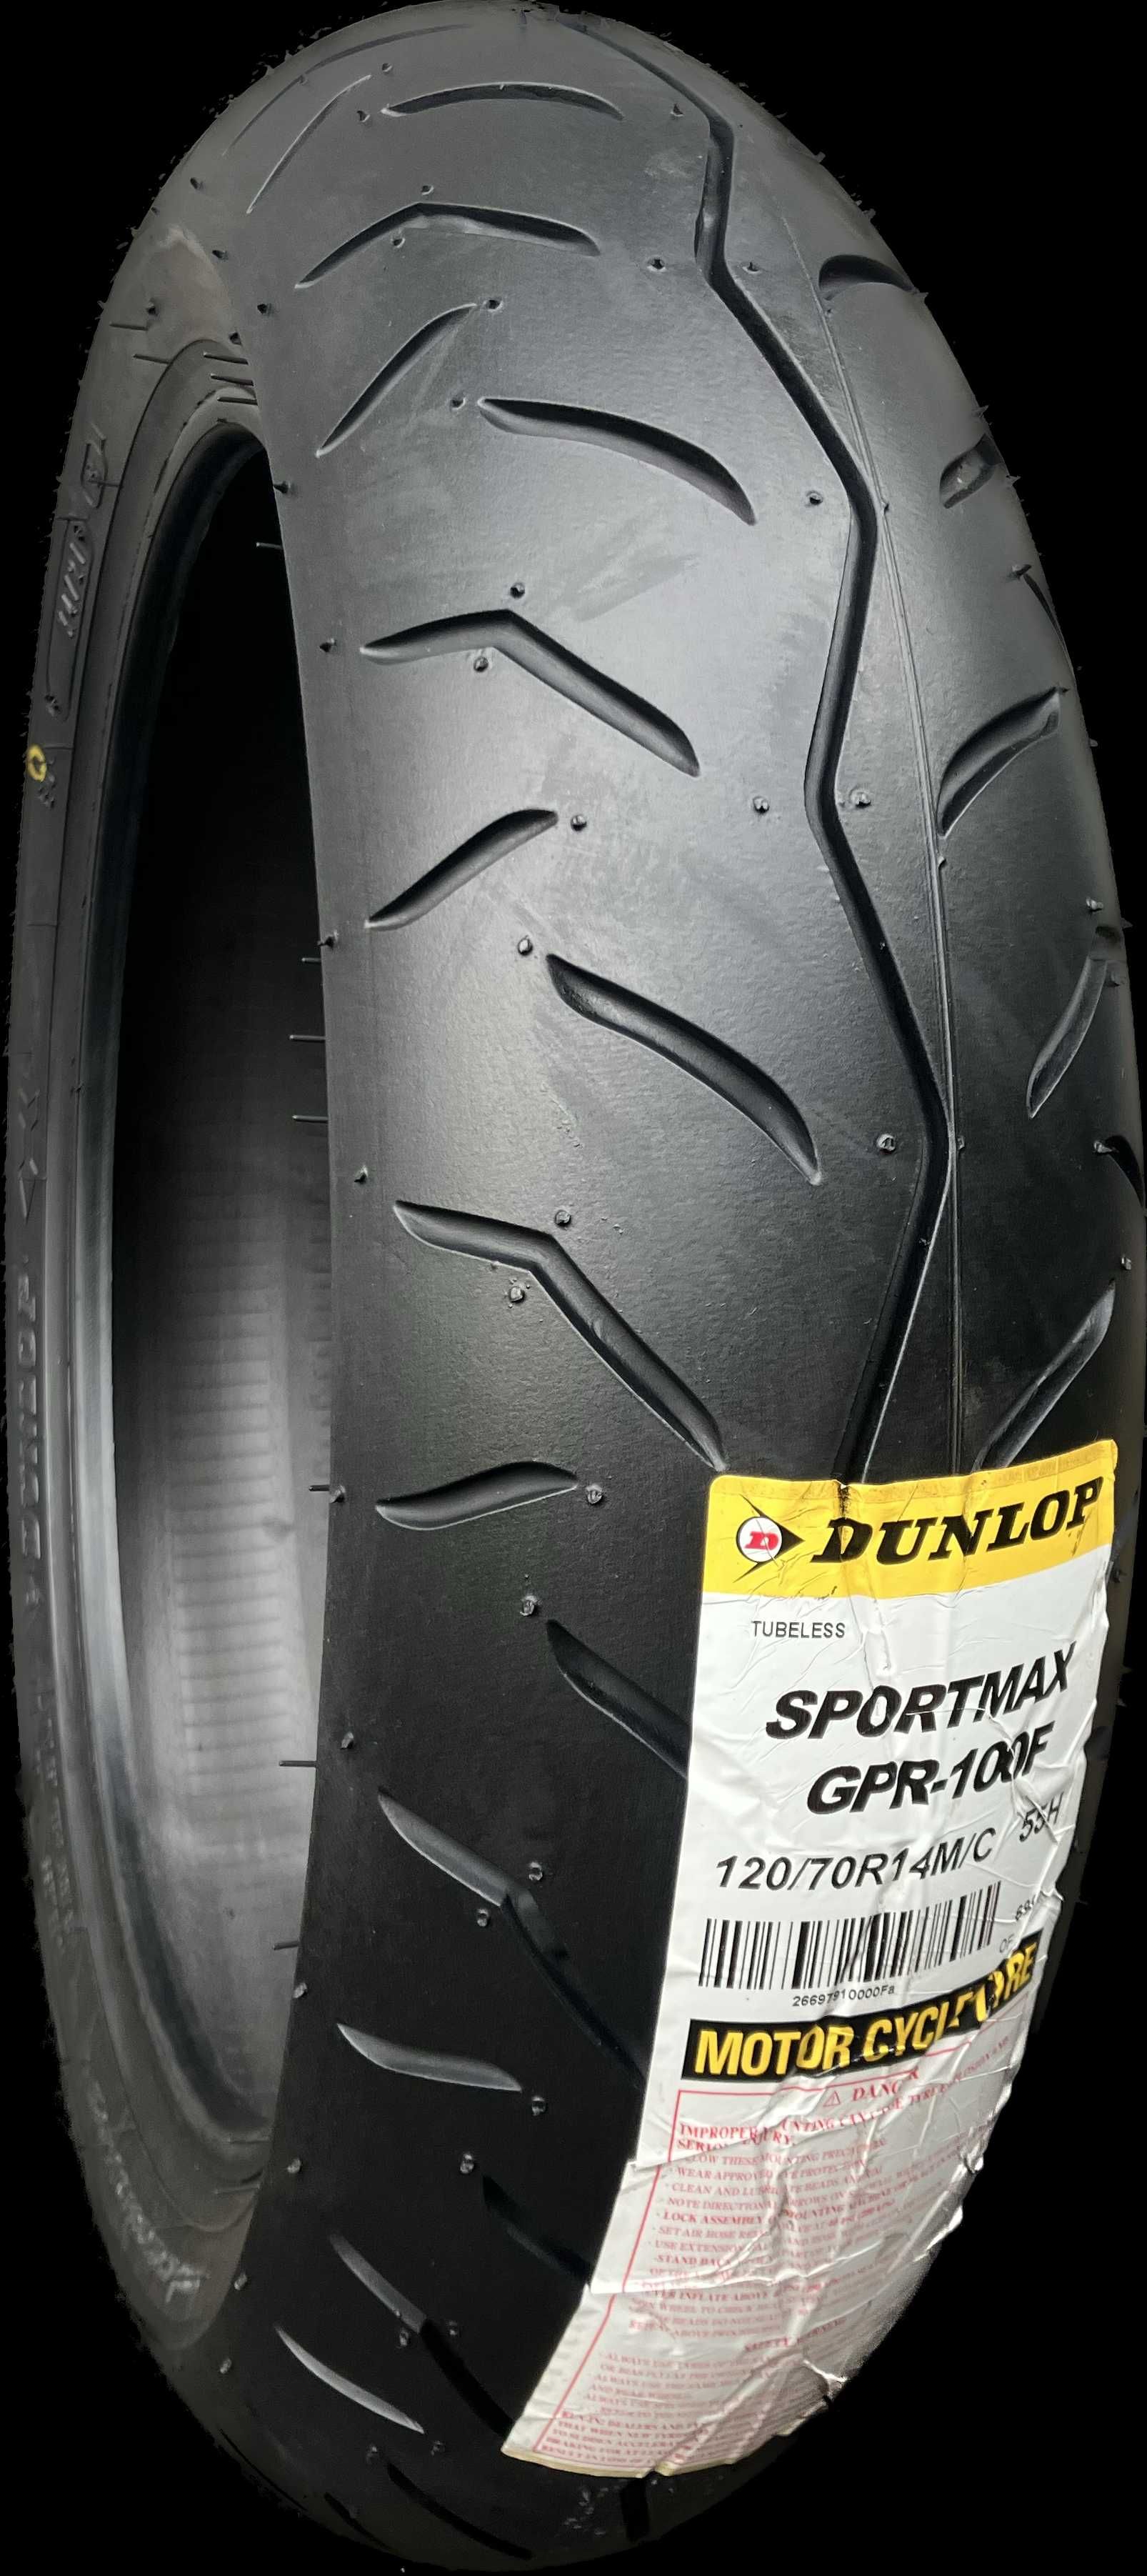 Dunlop Sportmax GPR-100F 120/70R14 55H T-Max SR Motard Nexus Runner